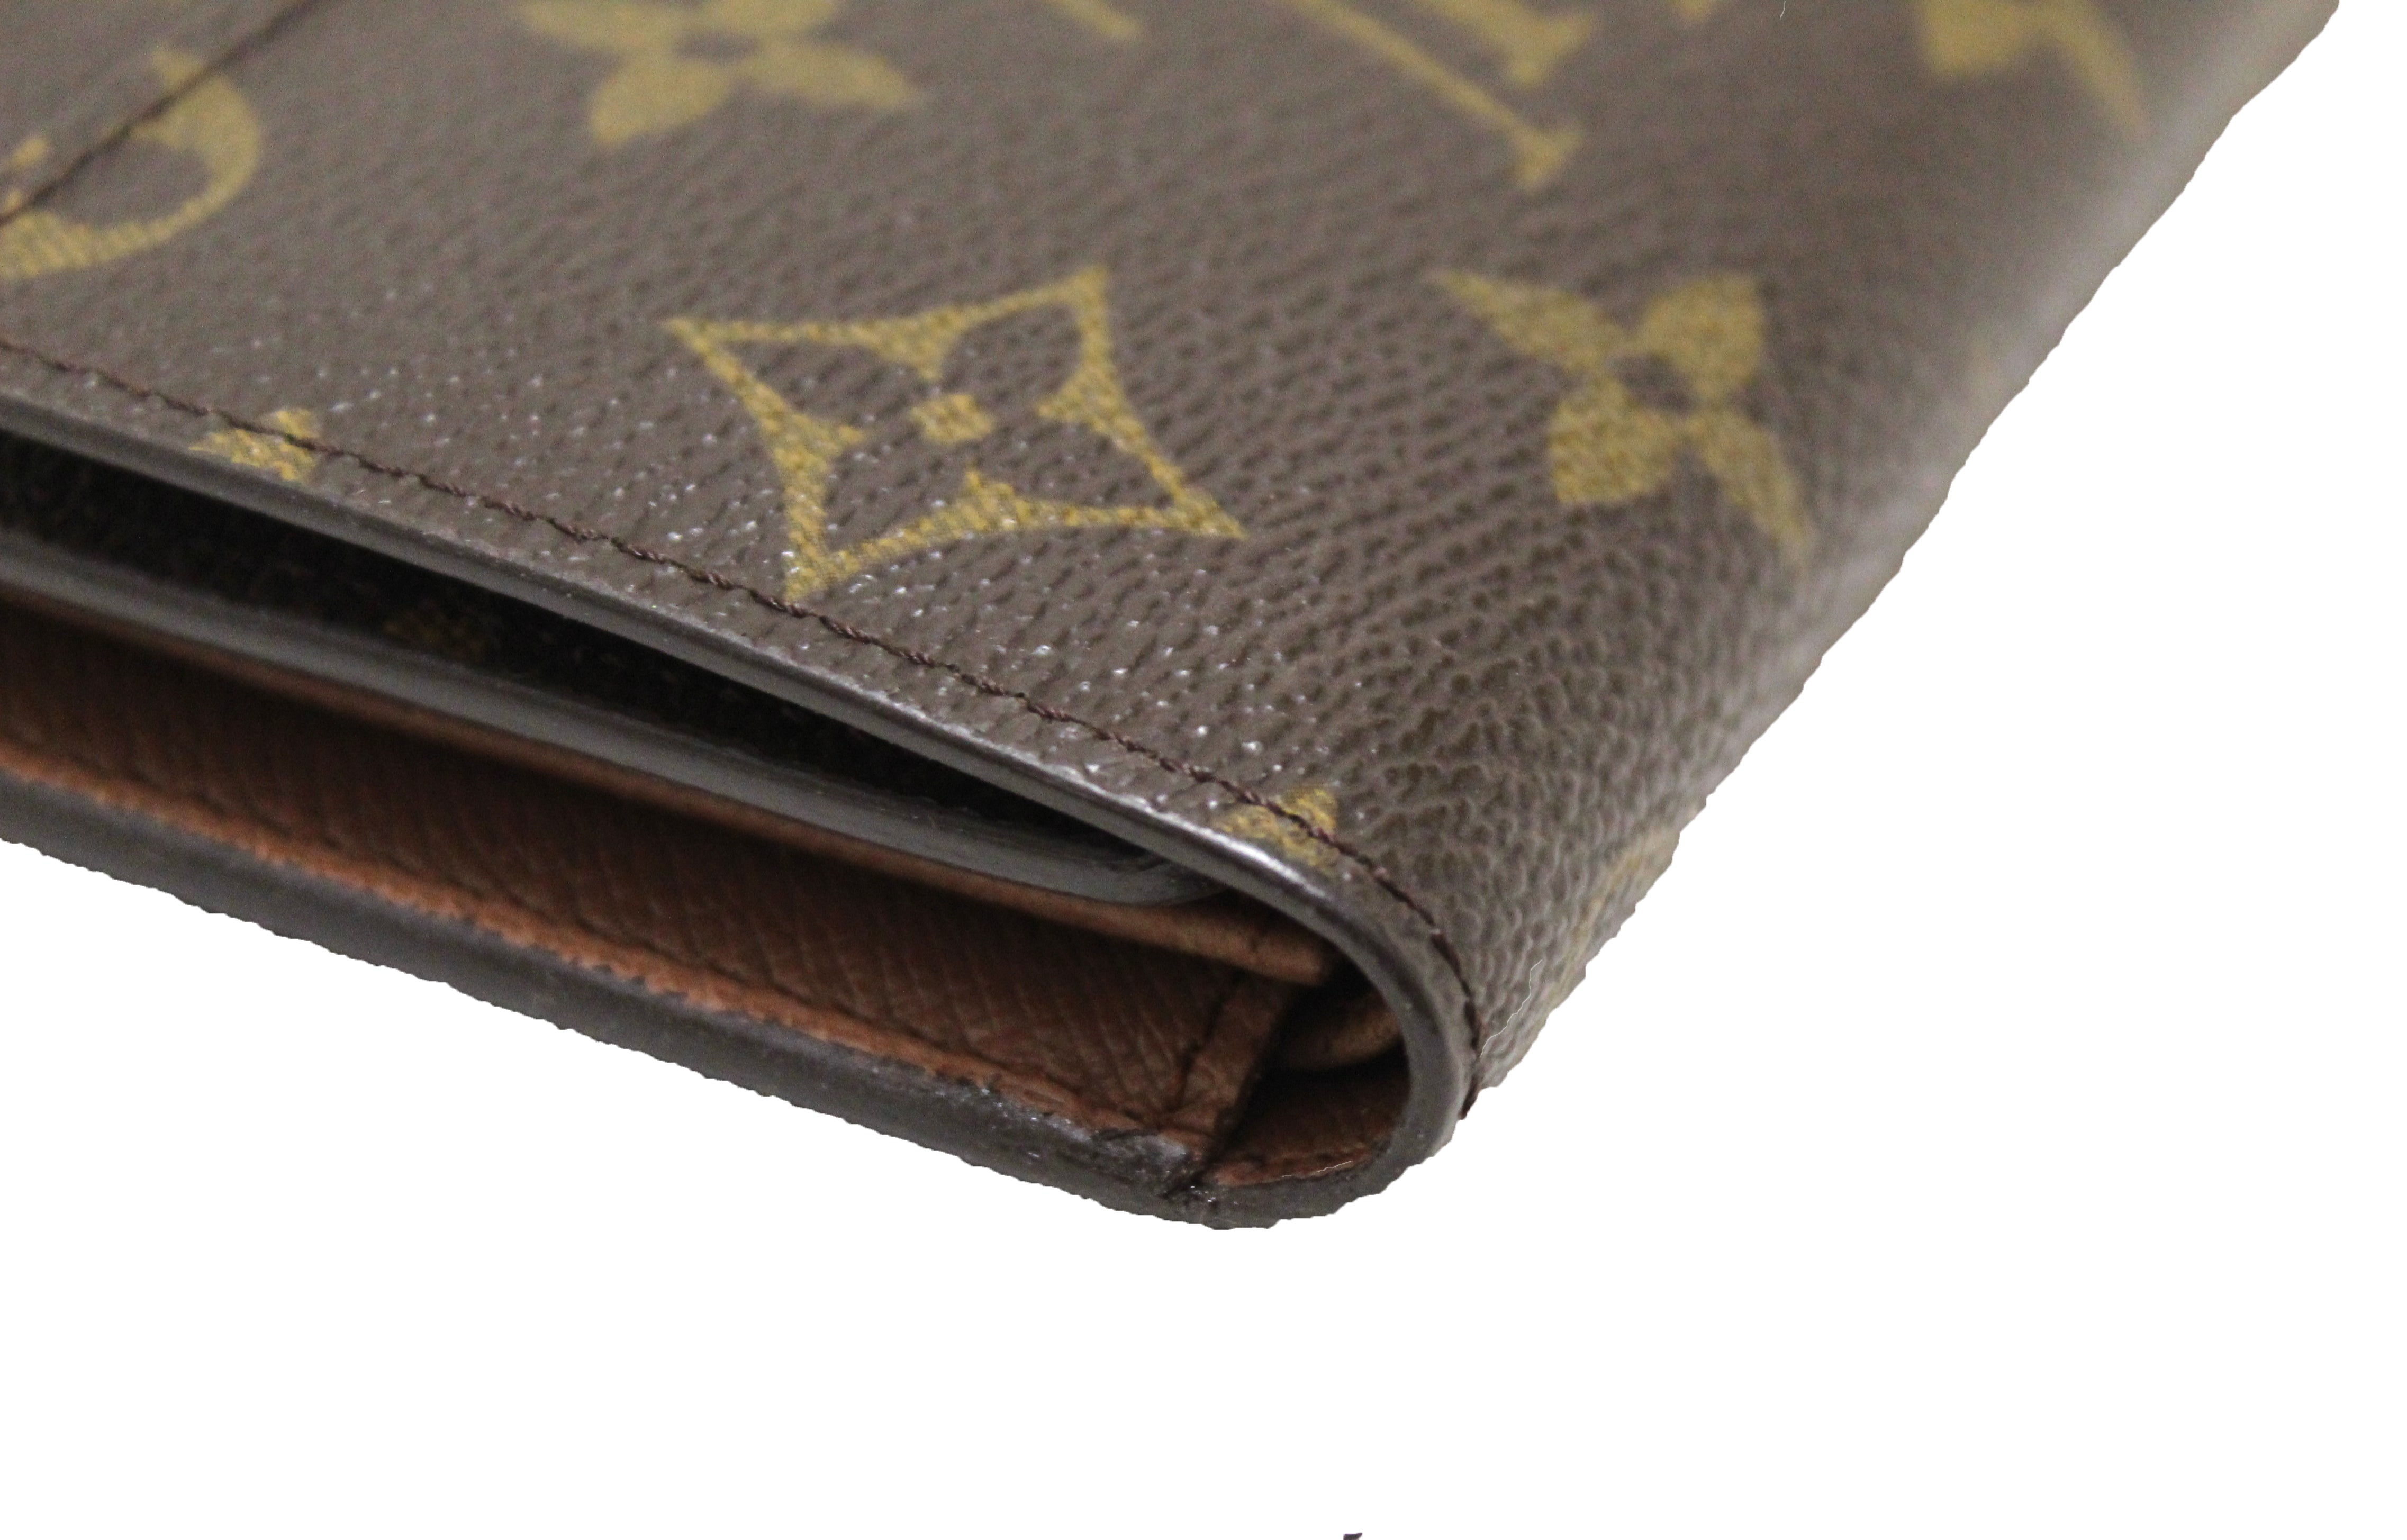 Authentic Louis Vuitton Damier Ebene Canvas PTI Long Flap Wallet